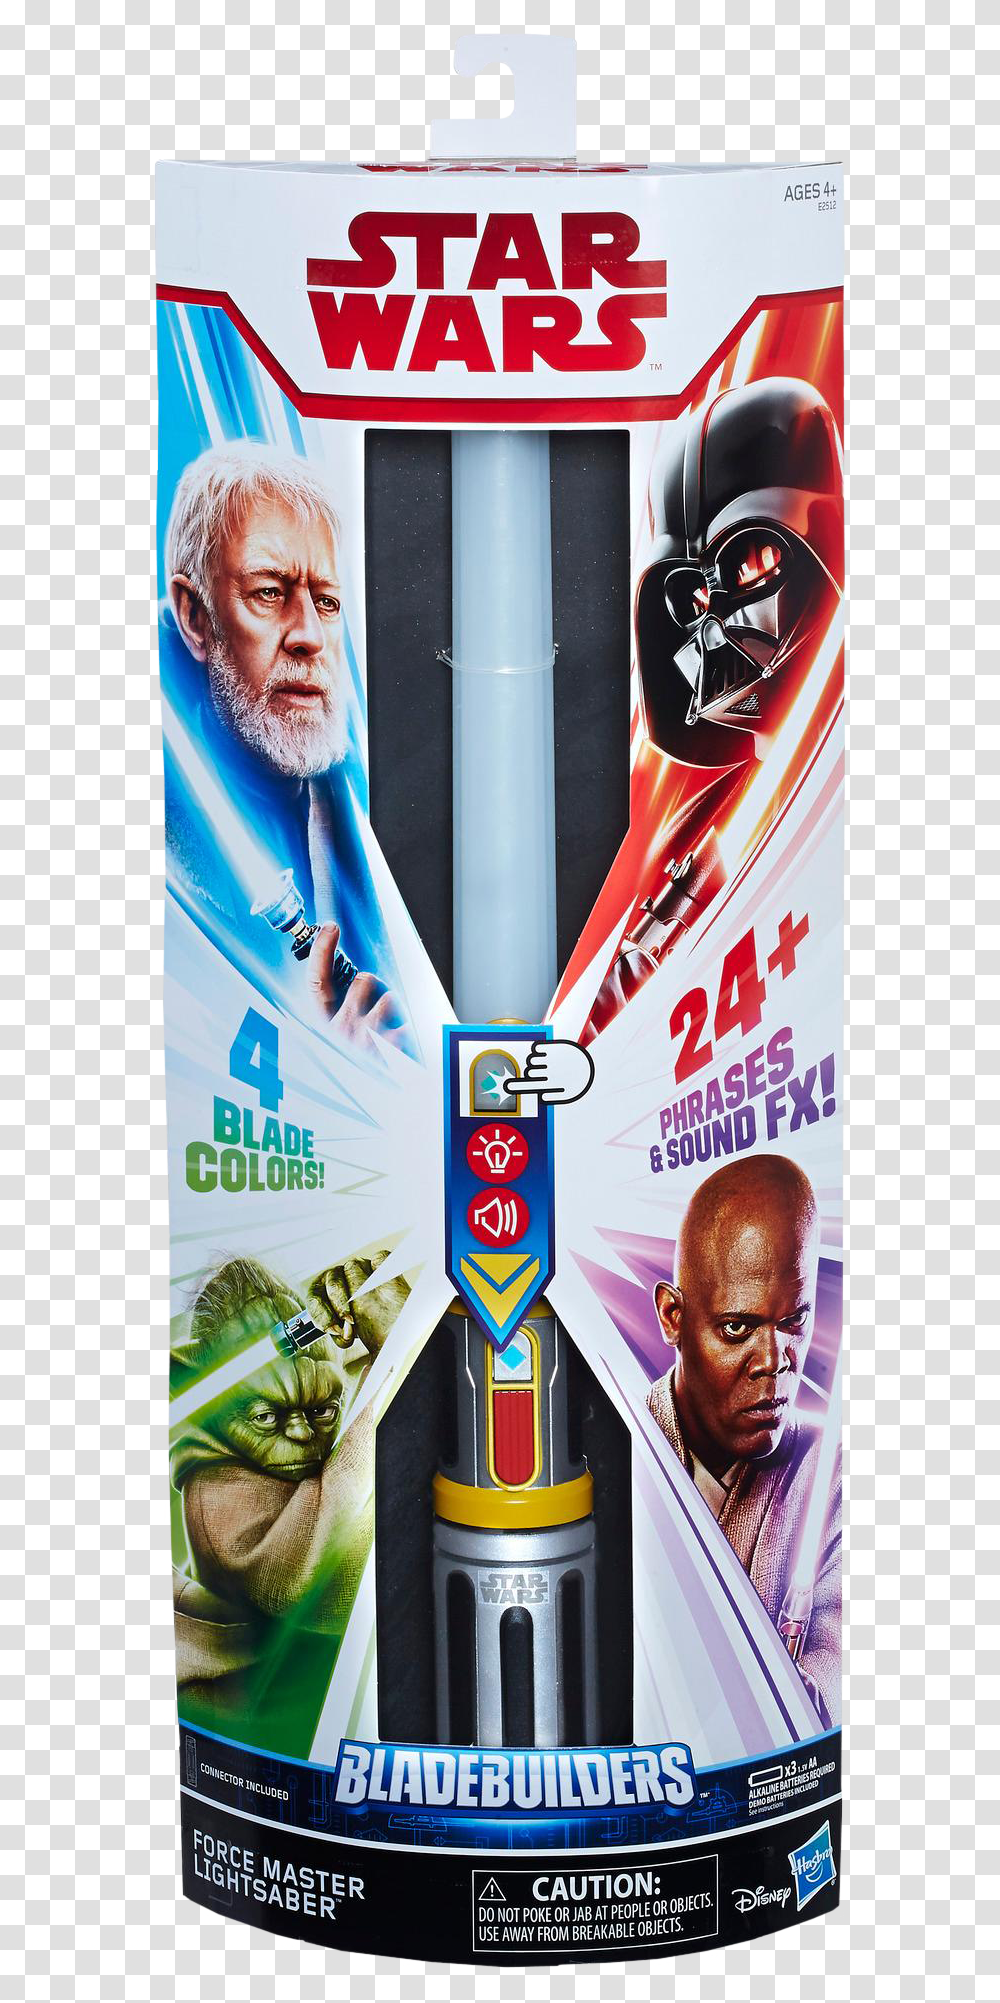 Hasbro Star Wars Bladebuilders Force Master Lightsaber, Poster, Advertisement, Flyer, Paper Transparent Png